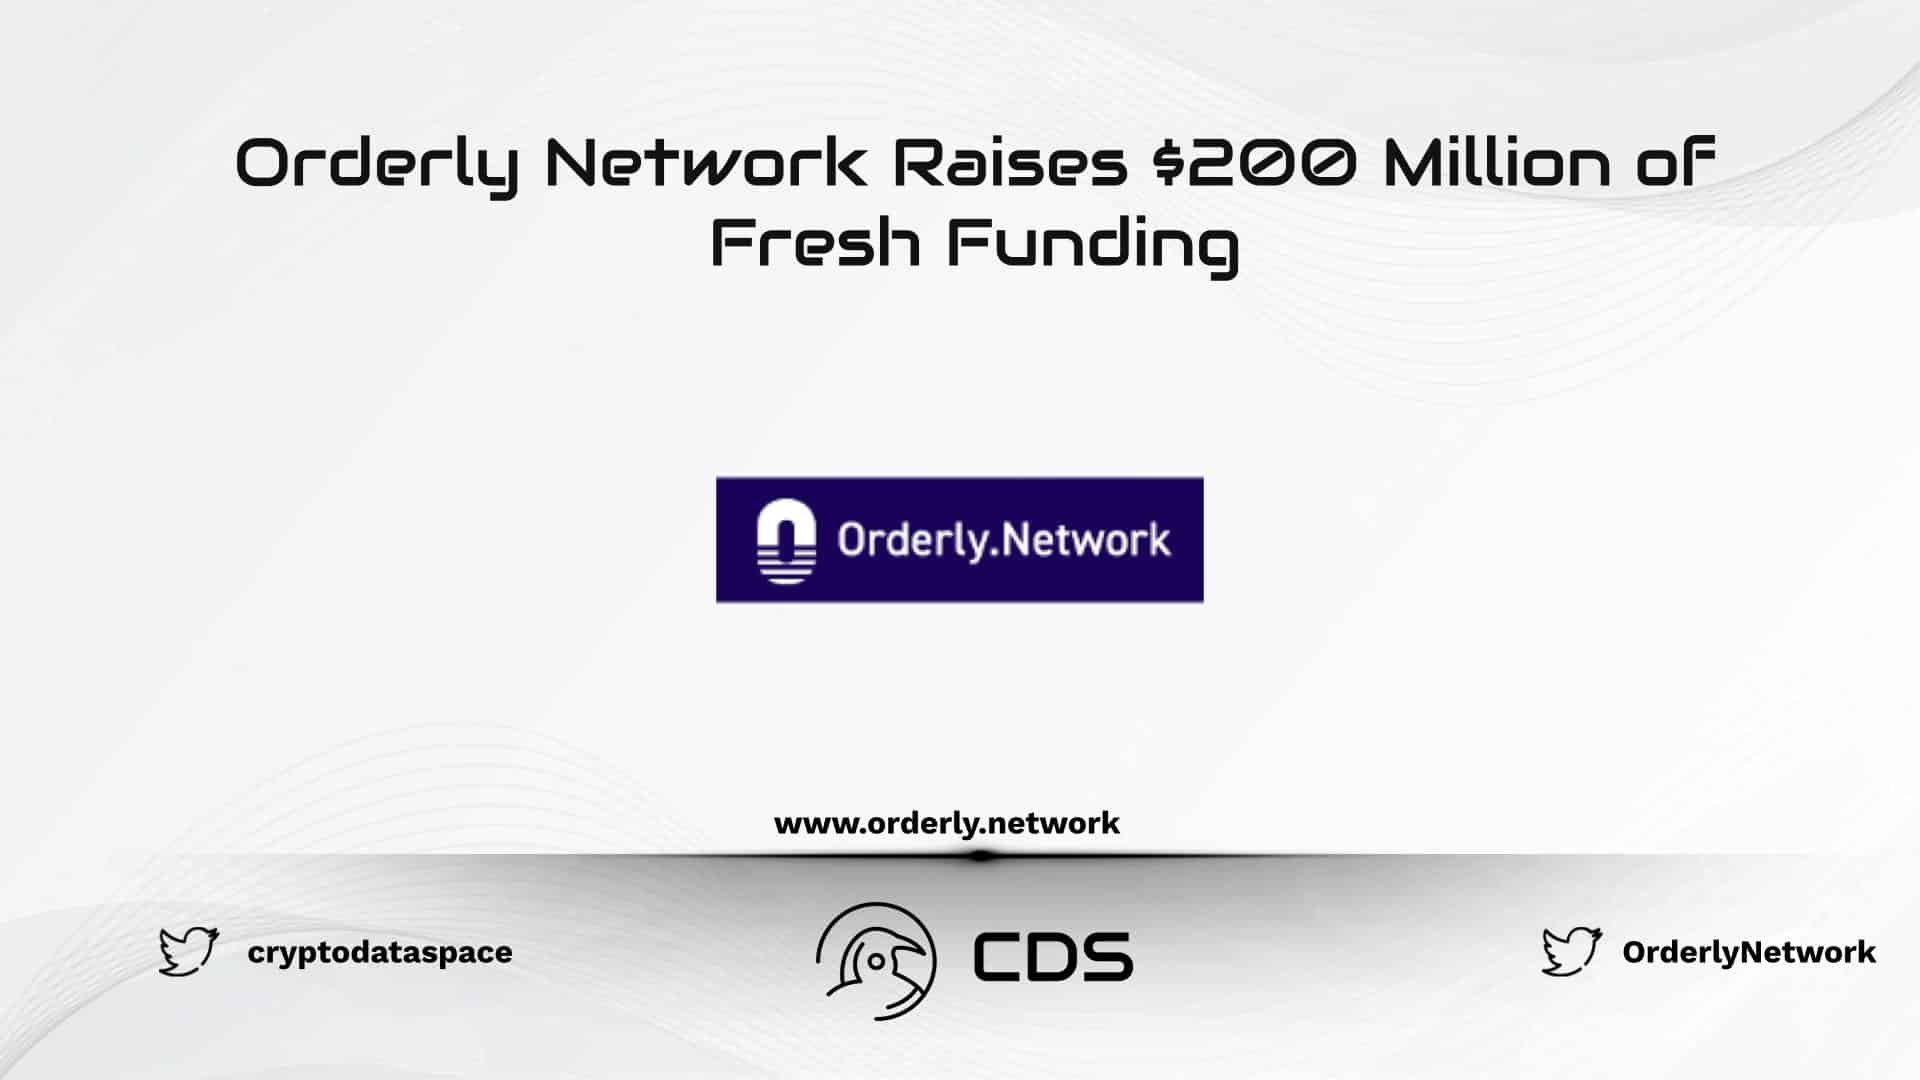 Orderly Network Raises $200 Million of Fresh Funding